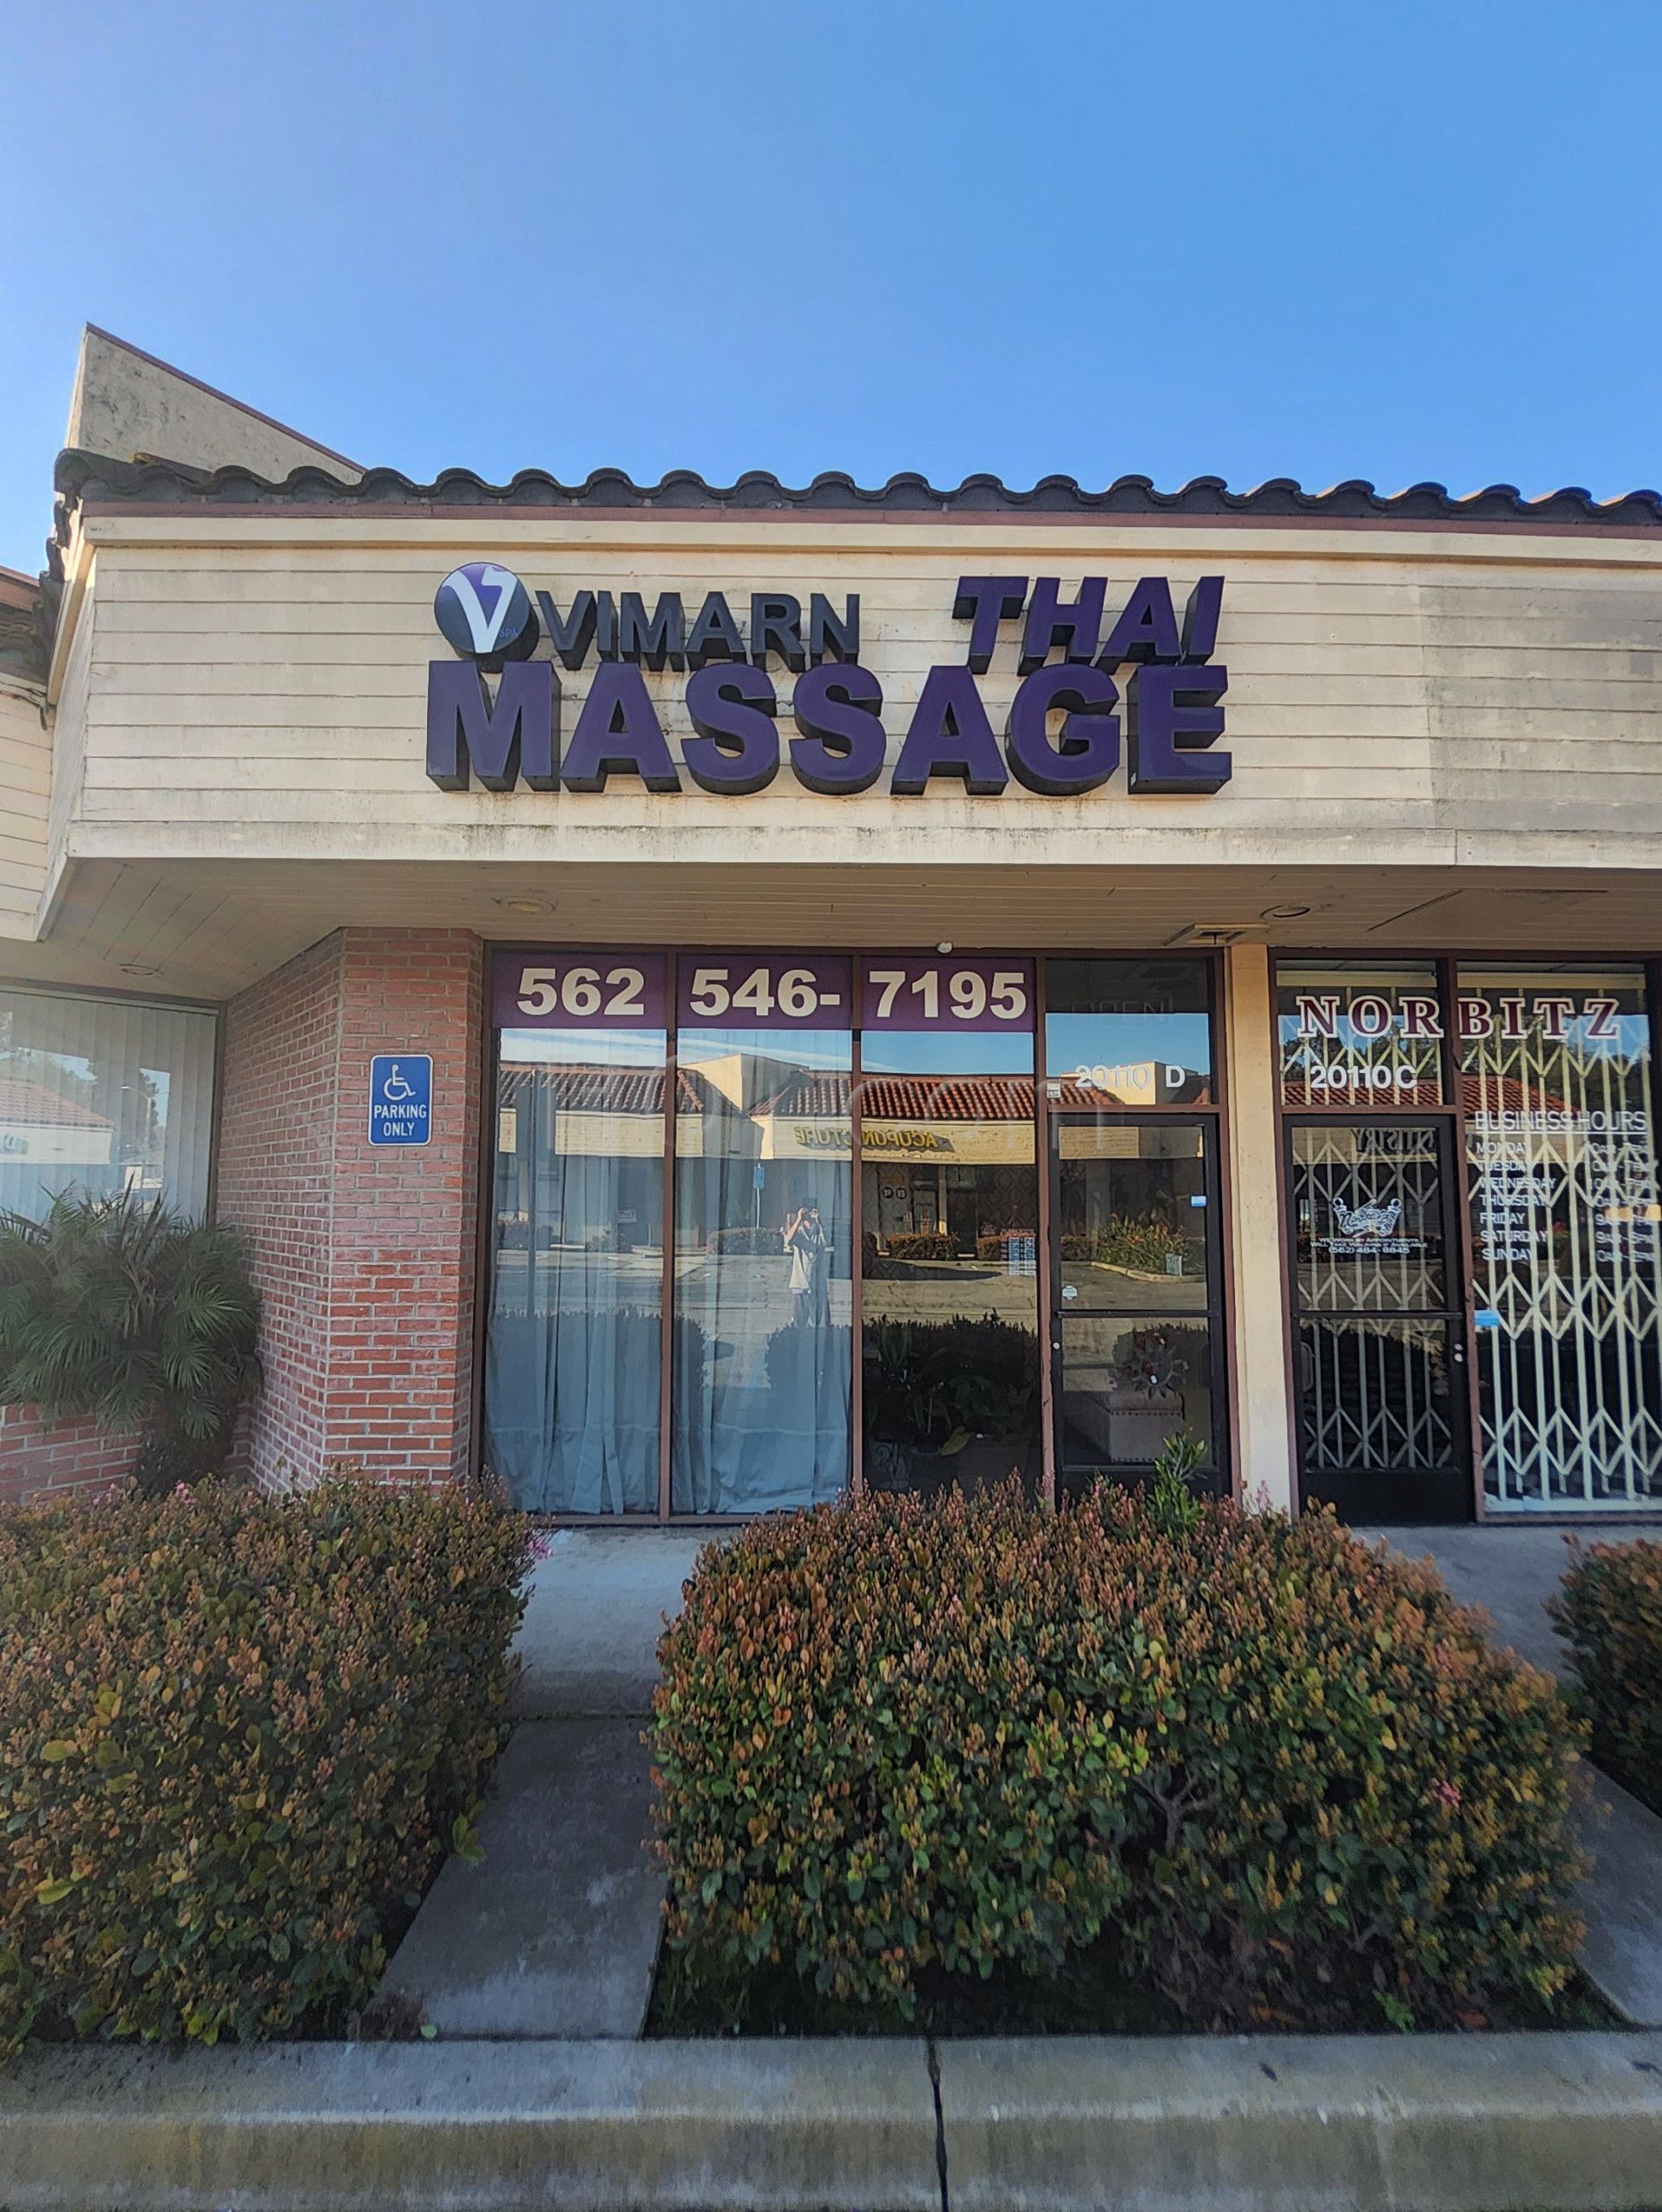 Cerritos, California Vimarn Thai Massage